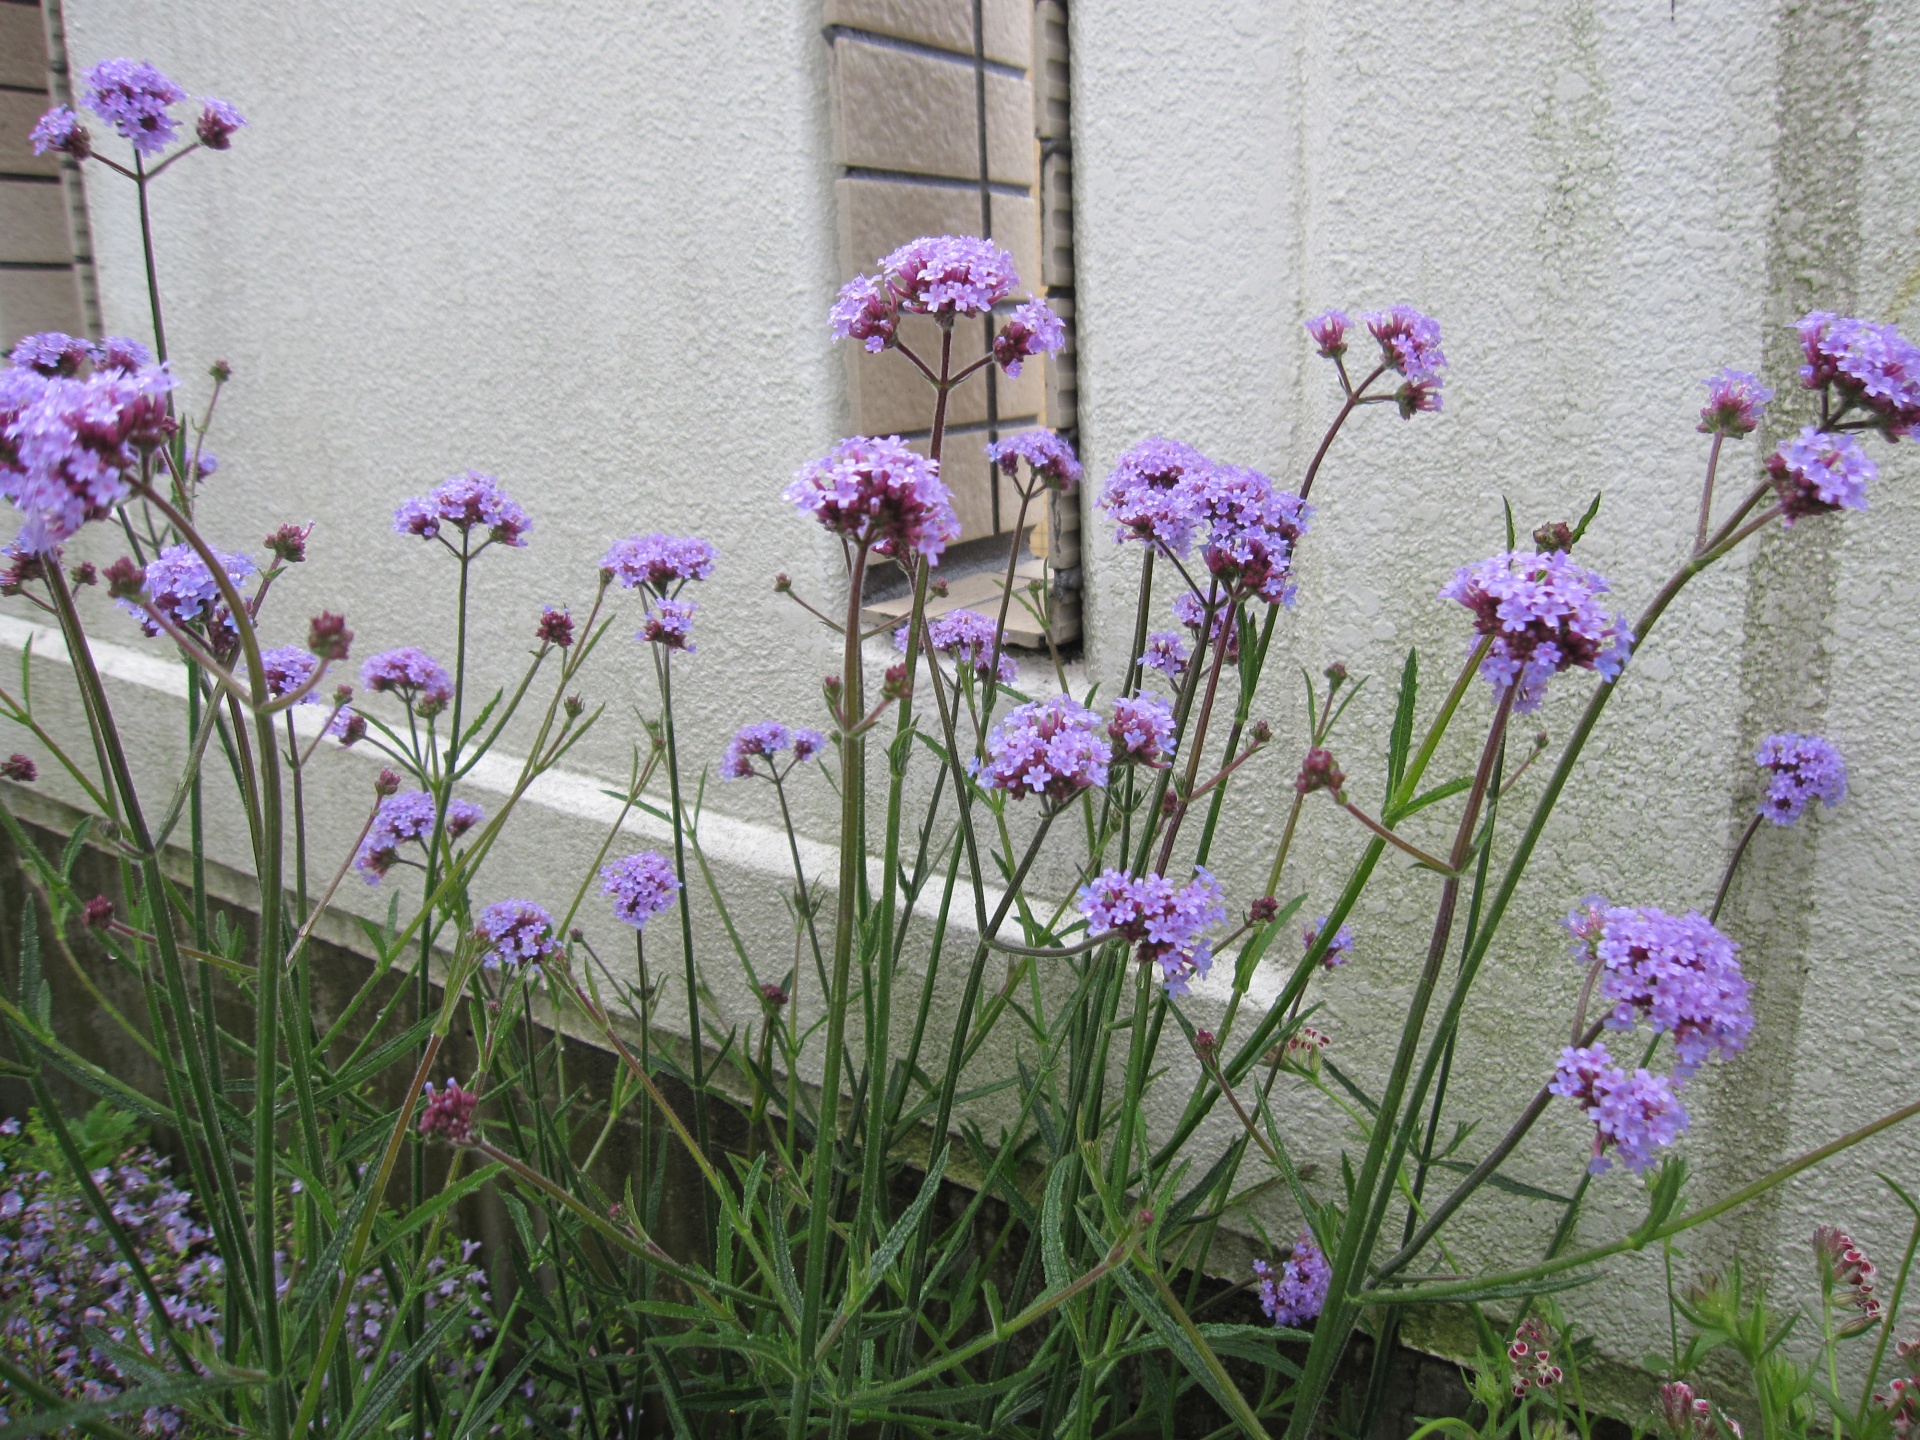 秋まで続くもの多めです 札幌 マイガーデンの庭人niwanchuブログ